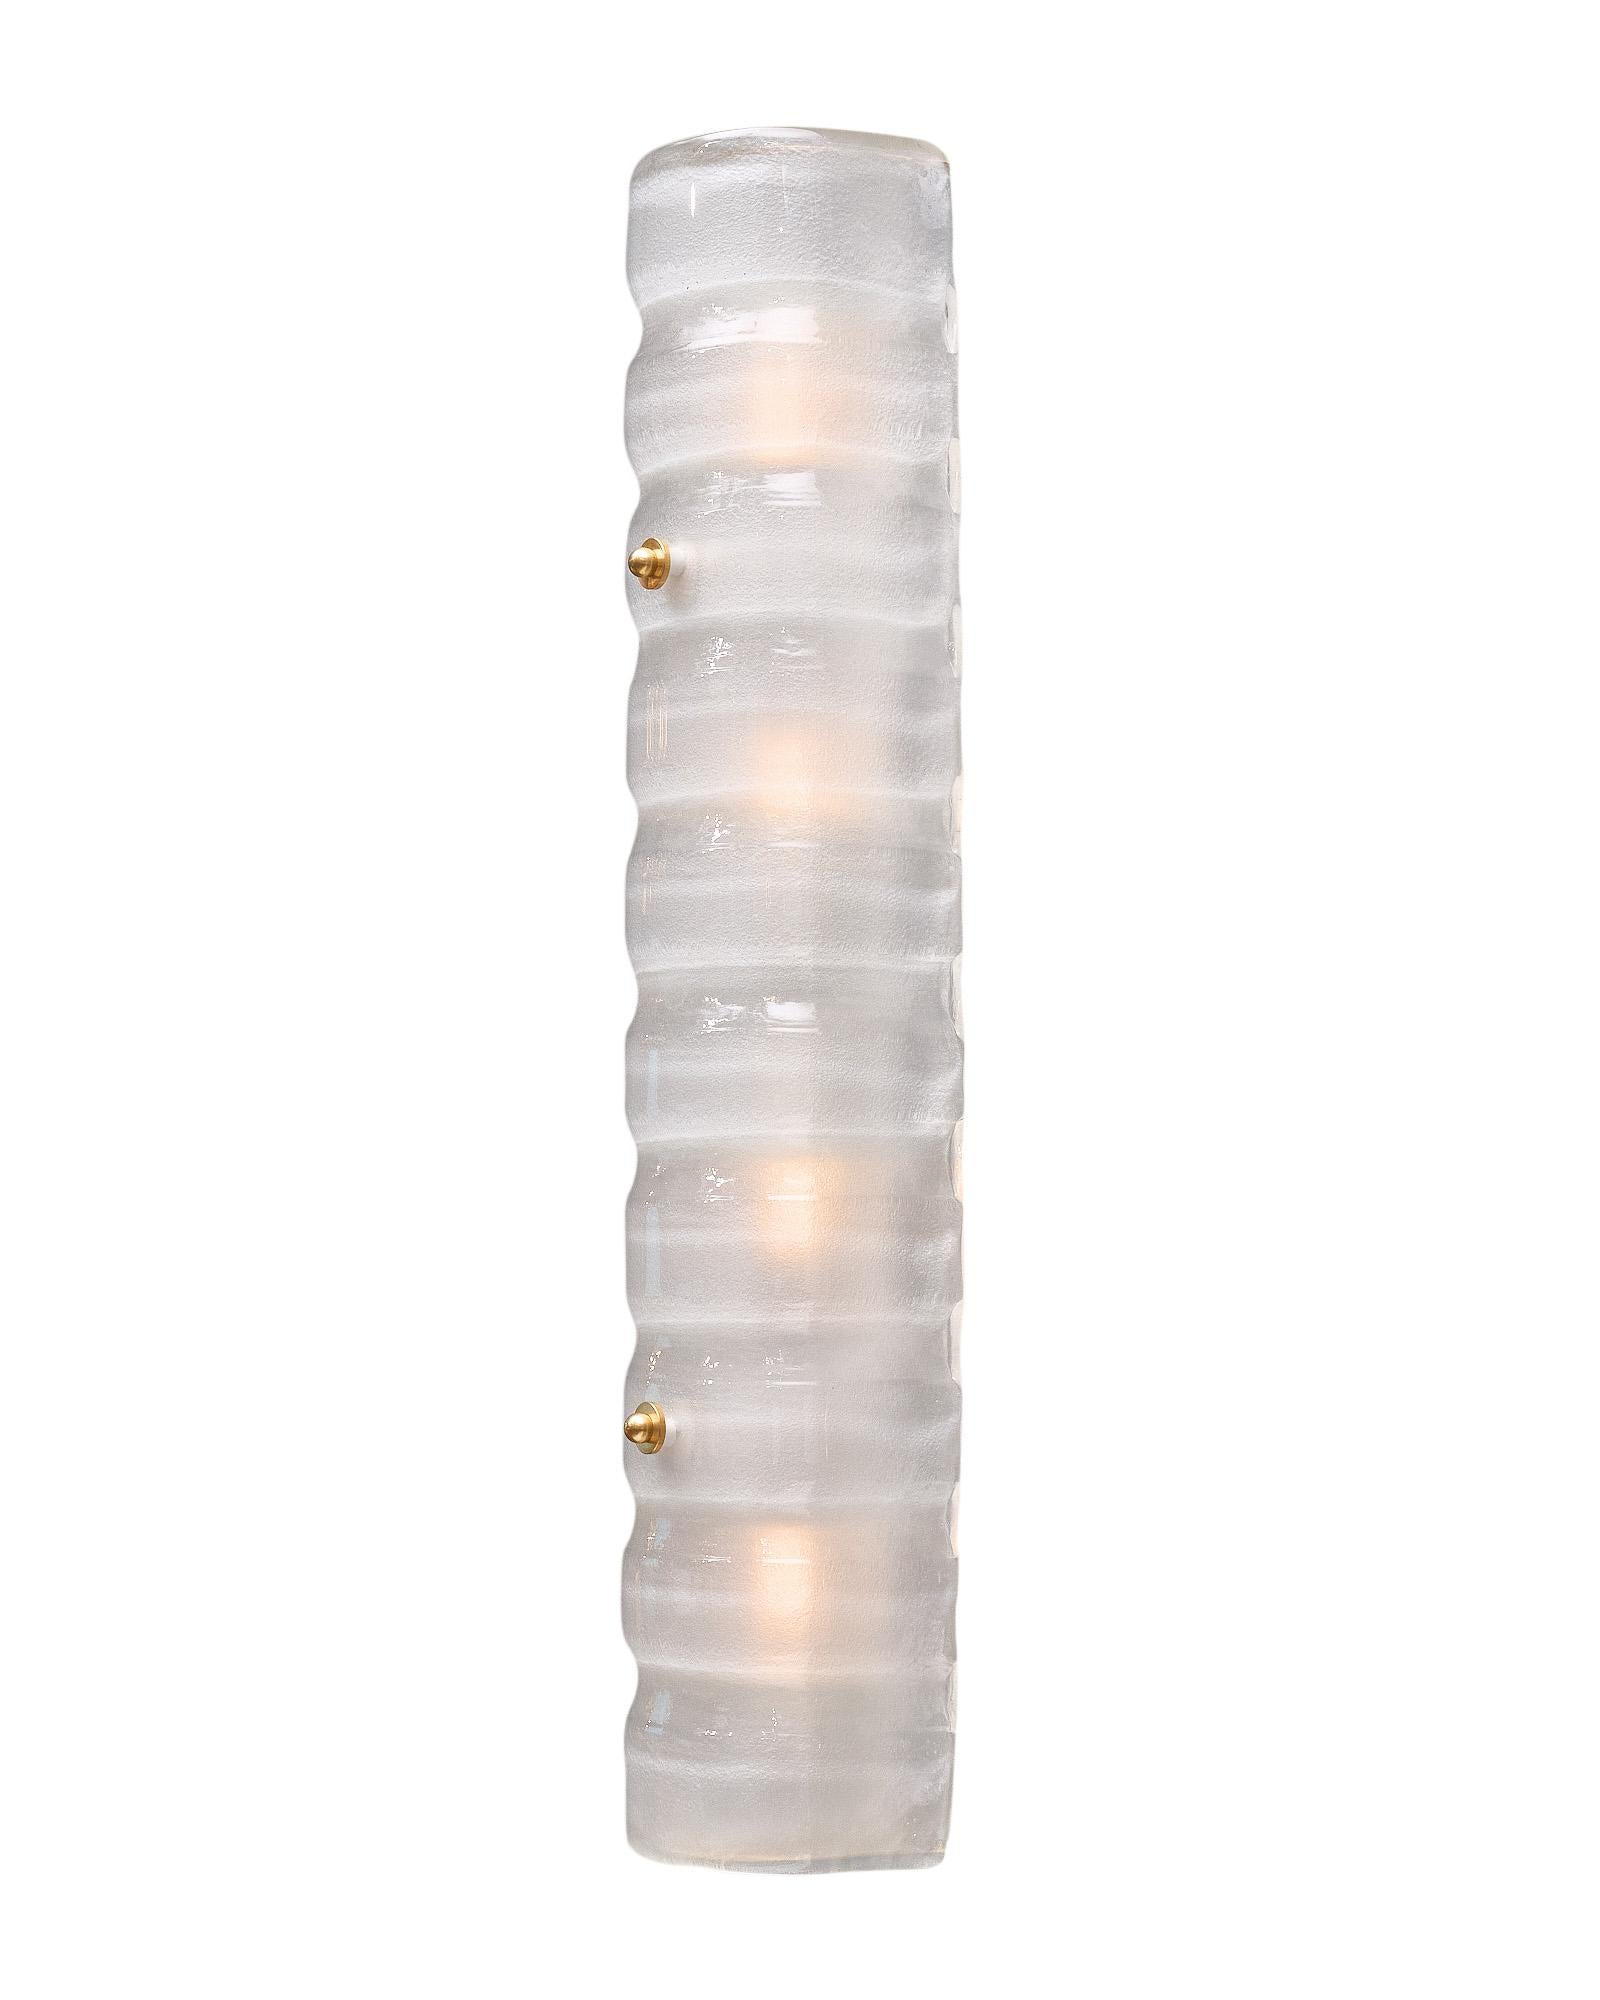 Ein Paar Wandleuchter aus mundgeblasenem Murano-Glas in einem perlweißen Ton. Jede Leuchte hat ein wellenförmiges Aussehen und wird von Messingknäufen gehalten. Sie wurden neu verkabelt, um den US-Normen zu entsprechen.